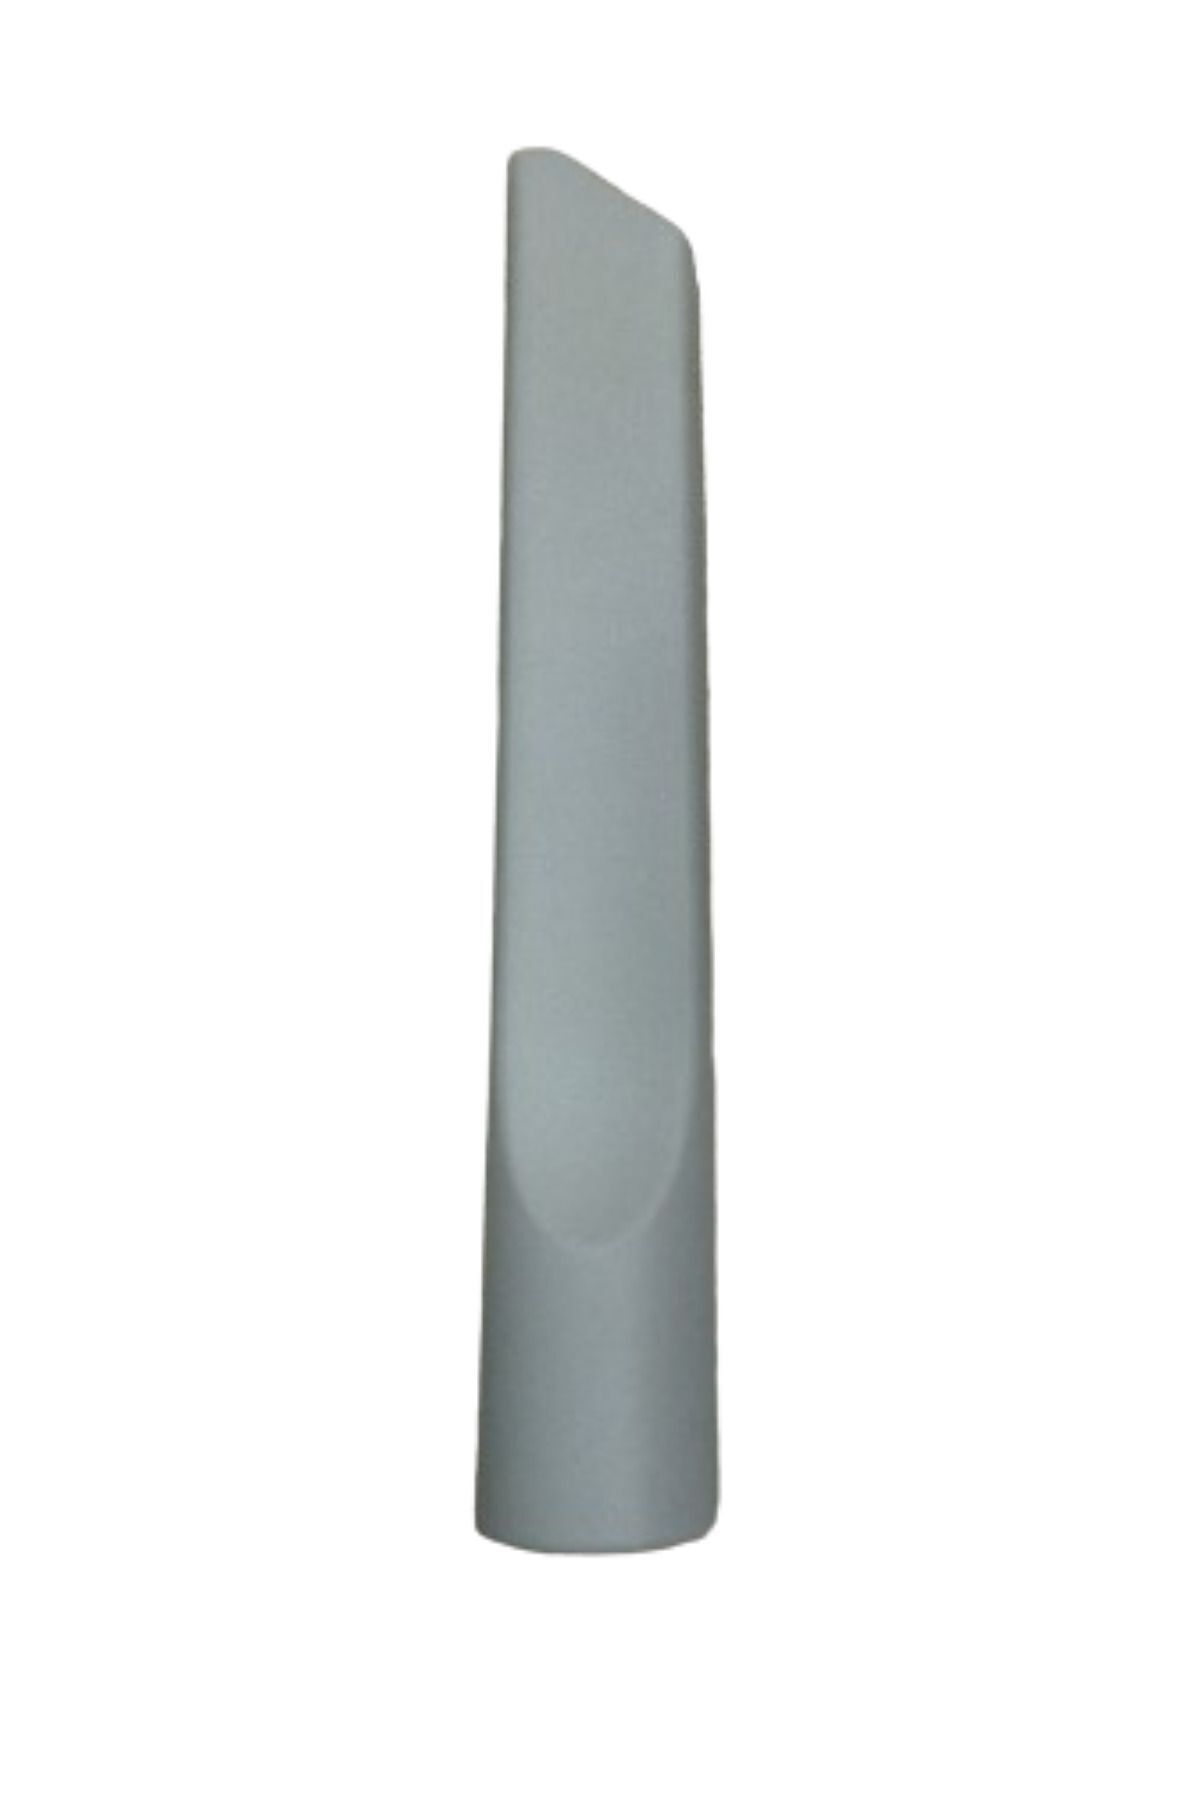 VESTEL Power Max 2002 Süpürge Koltuk Arası Düz Emici Başlık Gri Renk(22,5 cm)